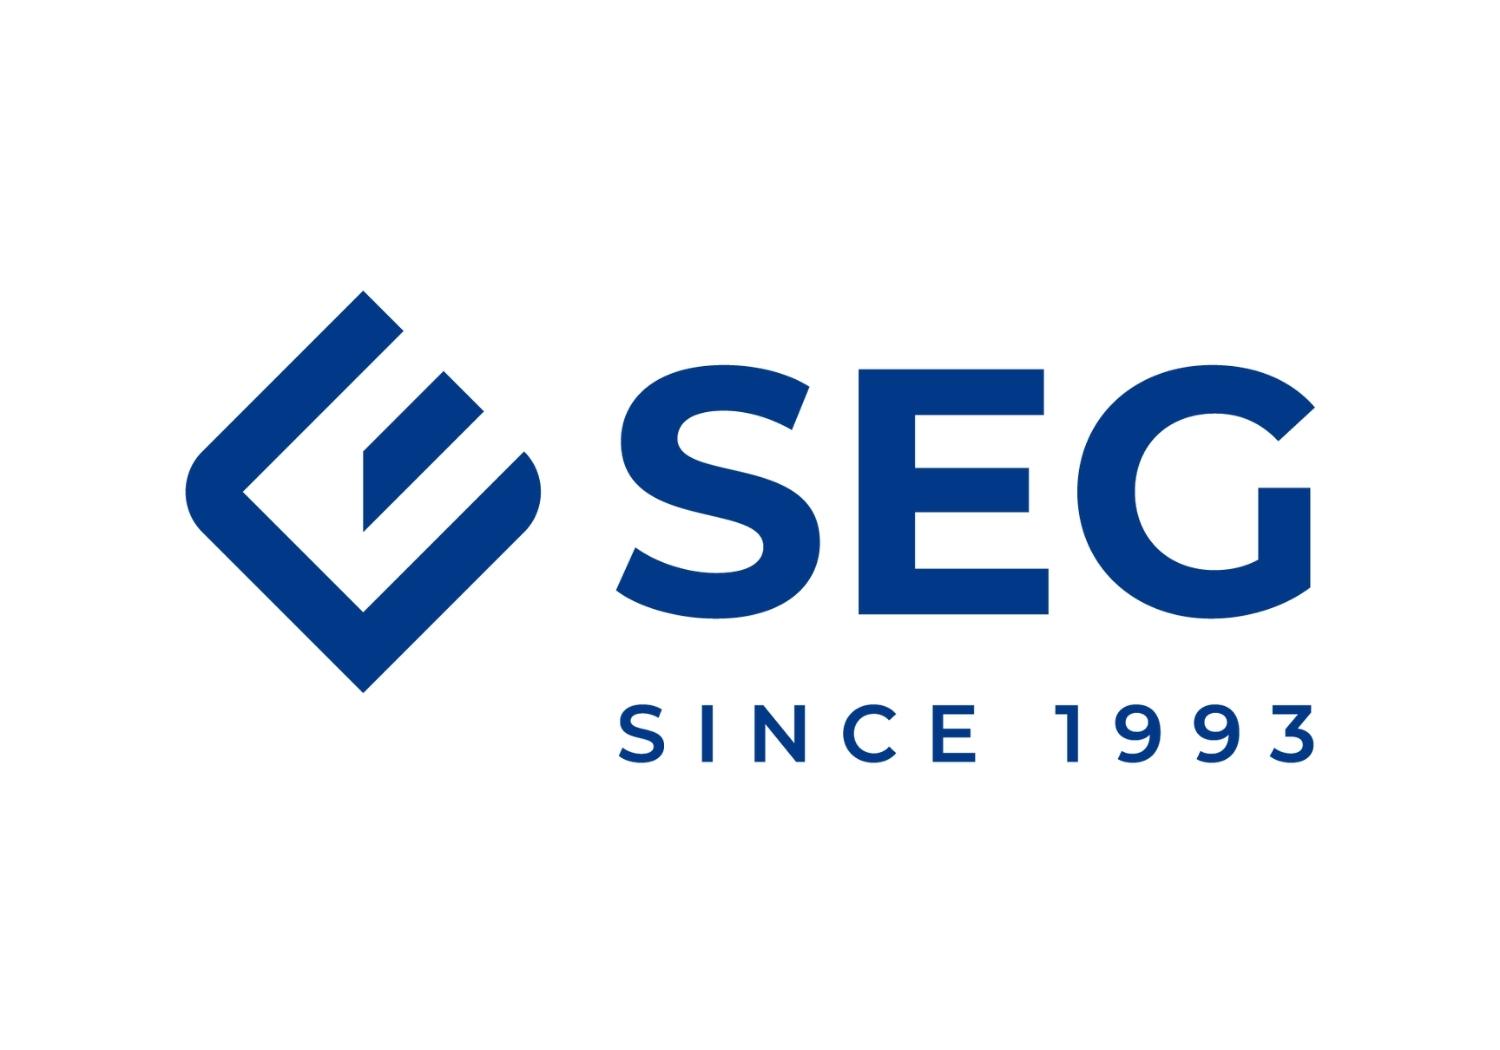 Logo SEG